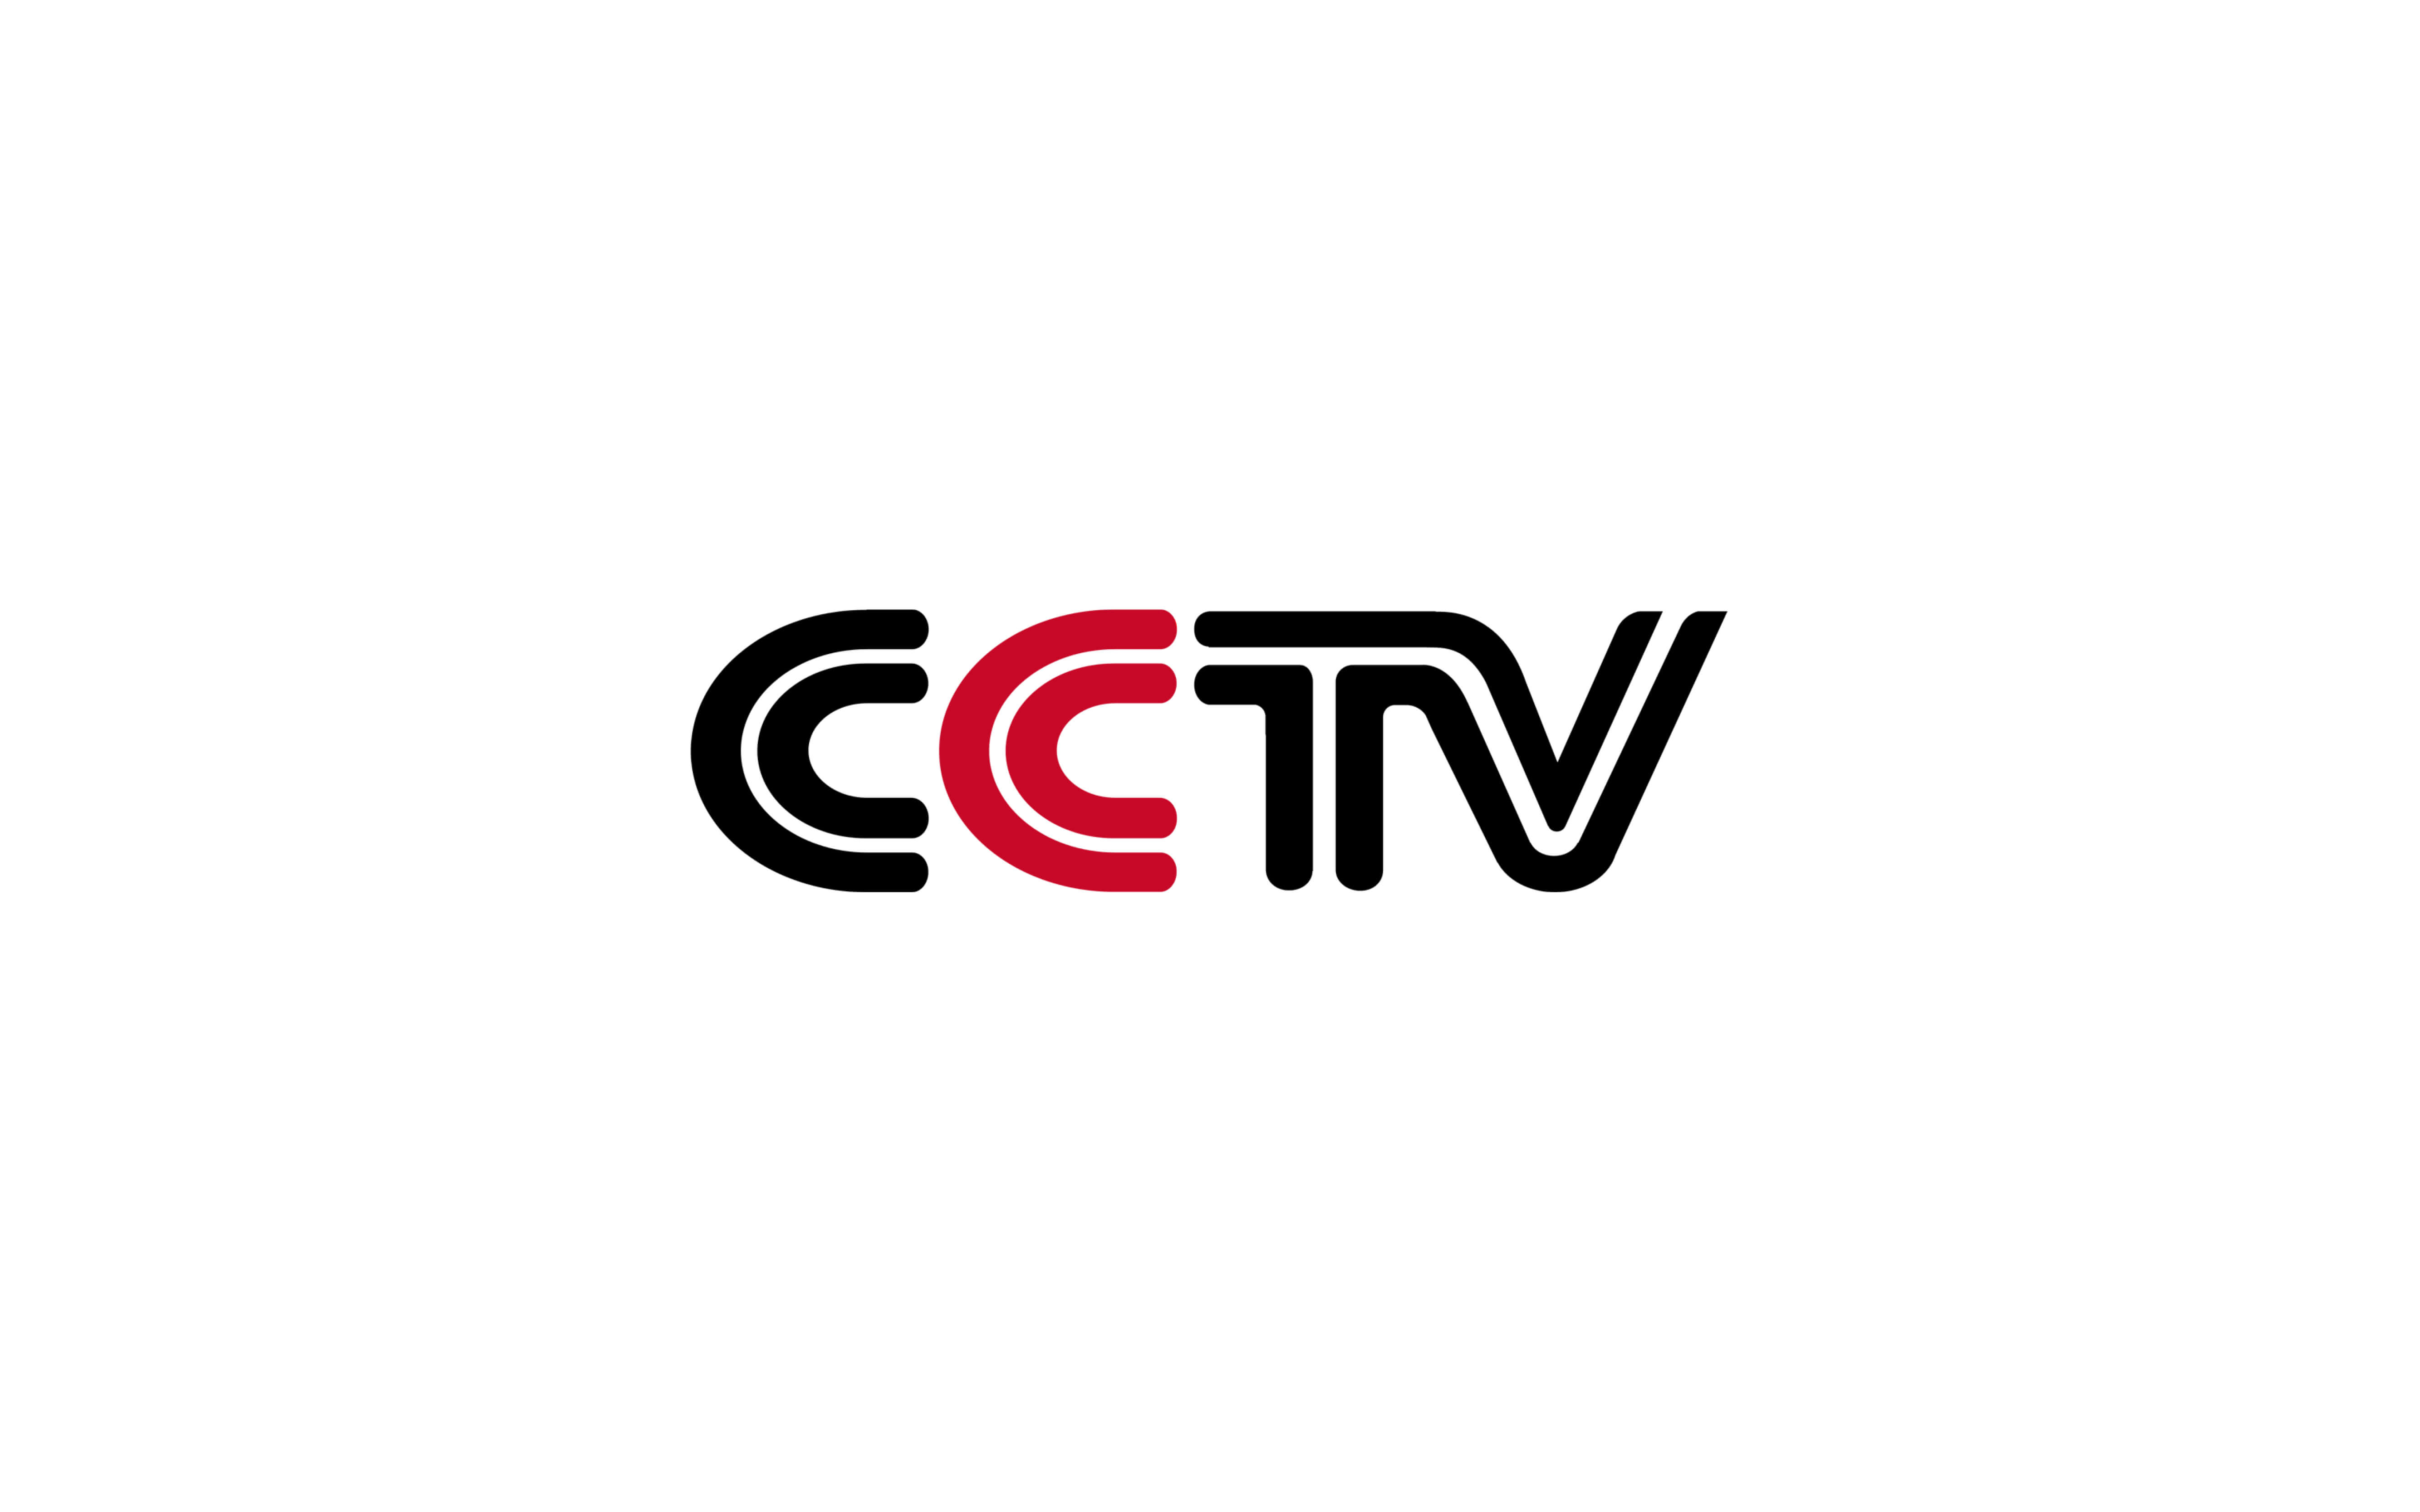 CCTV Logo - cctv logo in black and red